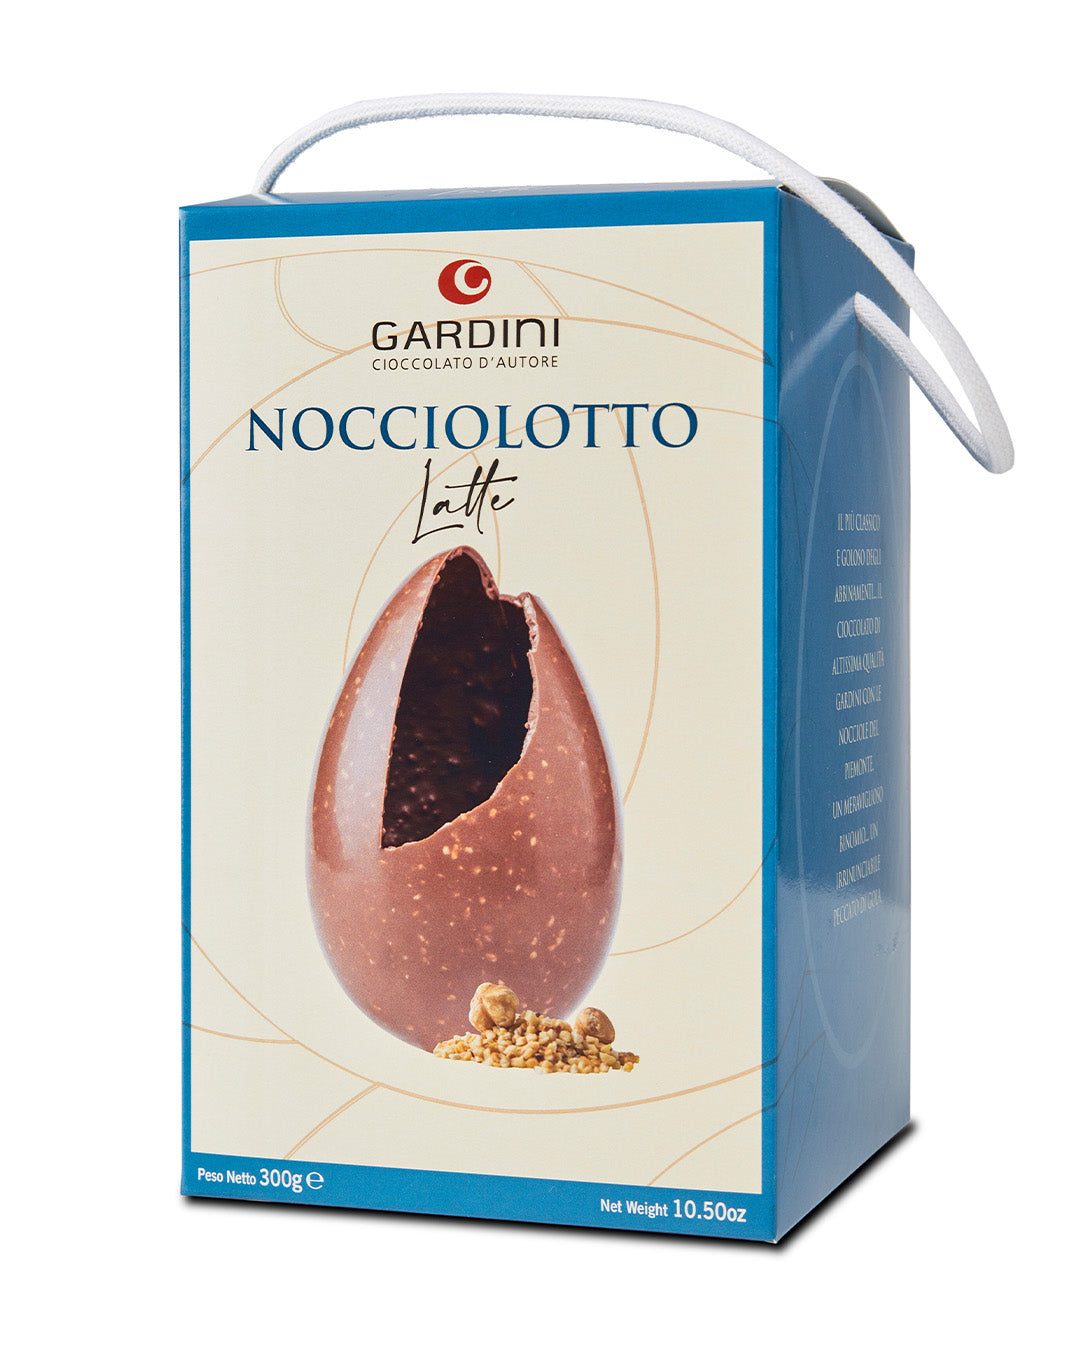 Uovo al Cioccolato al Latte “Nocciolotto“ - Gardini